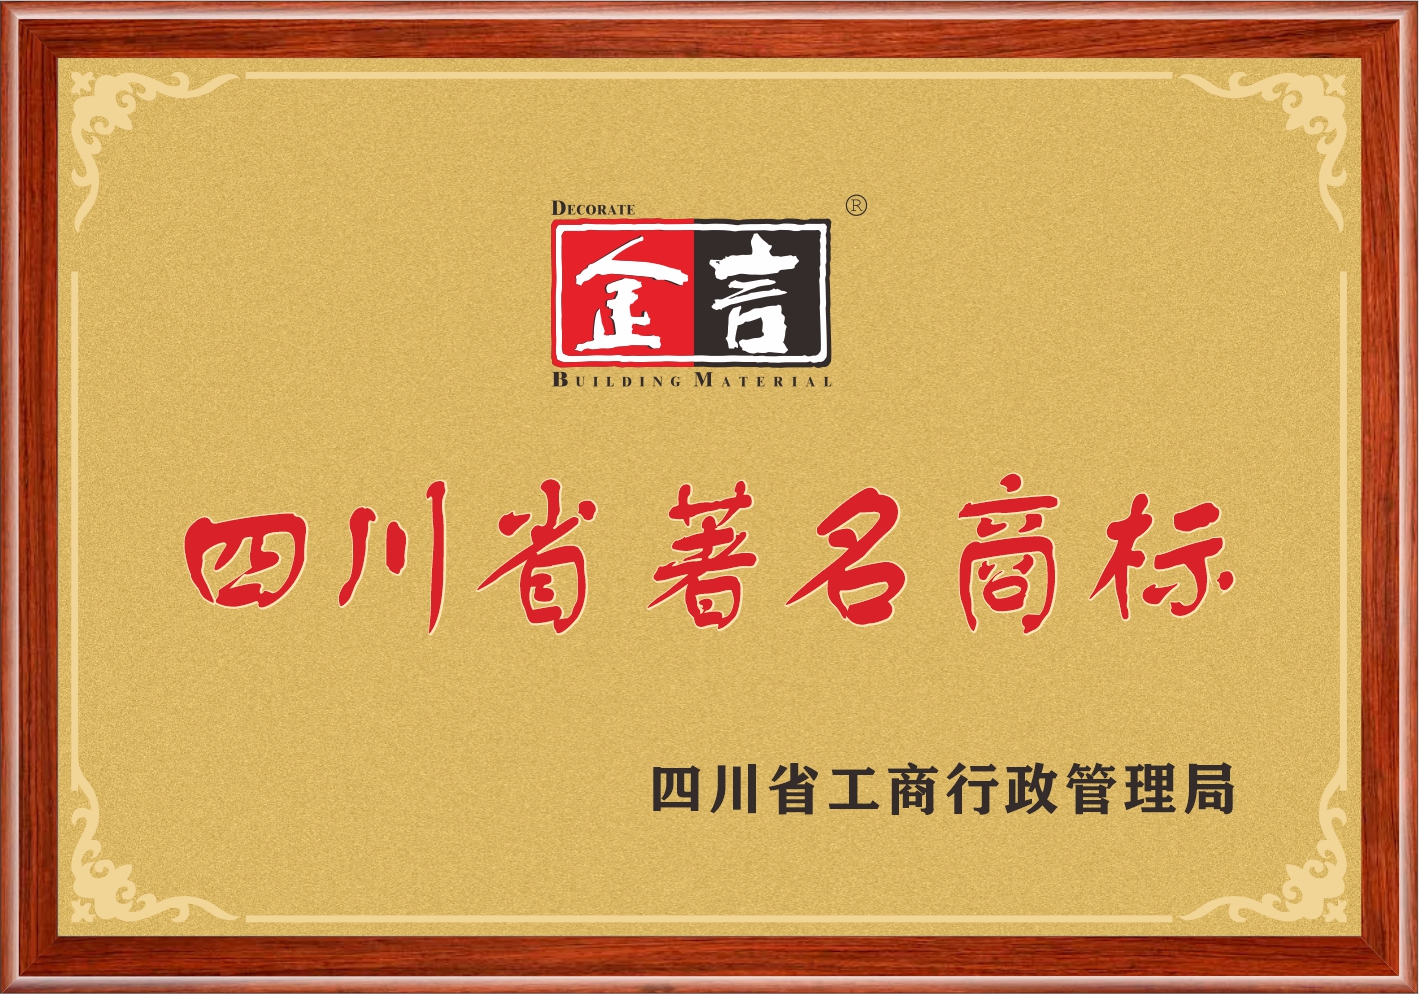 尊龙凯时(中国游)官方网站